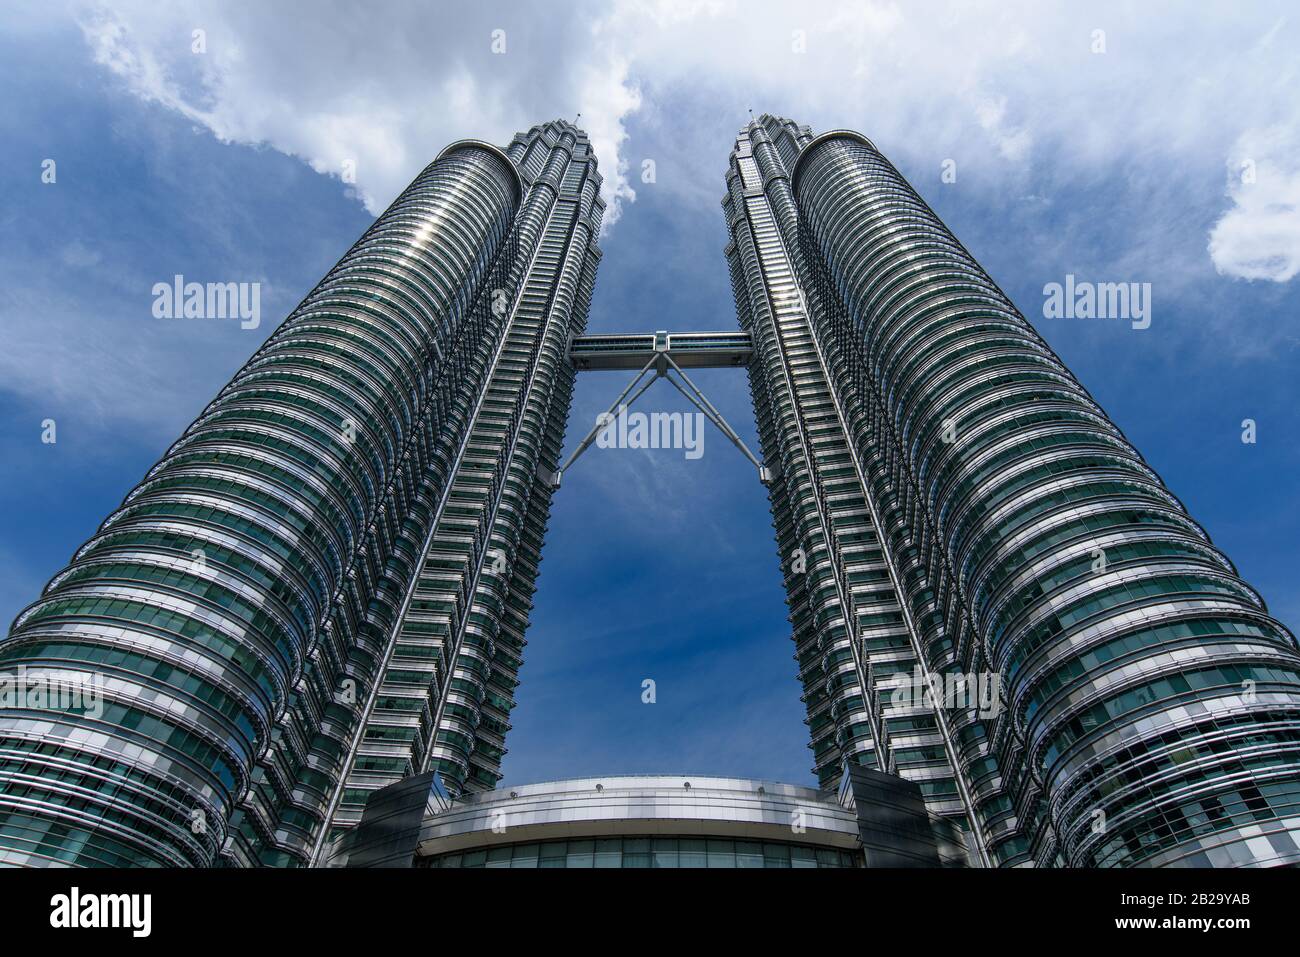 Petronas Twin Towers, the most famous twin skyscrapers in Kuala Lumpur, Malaysia Stock Photo